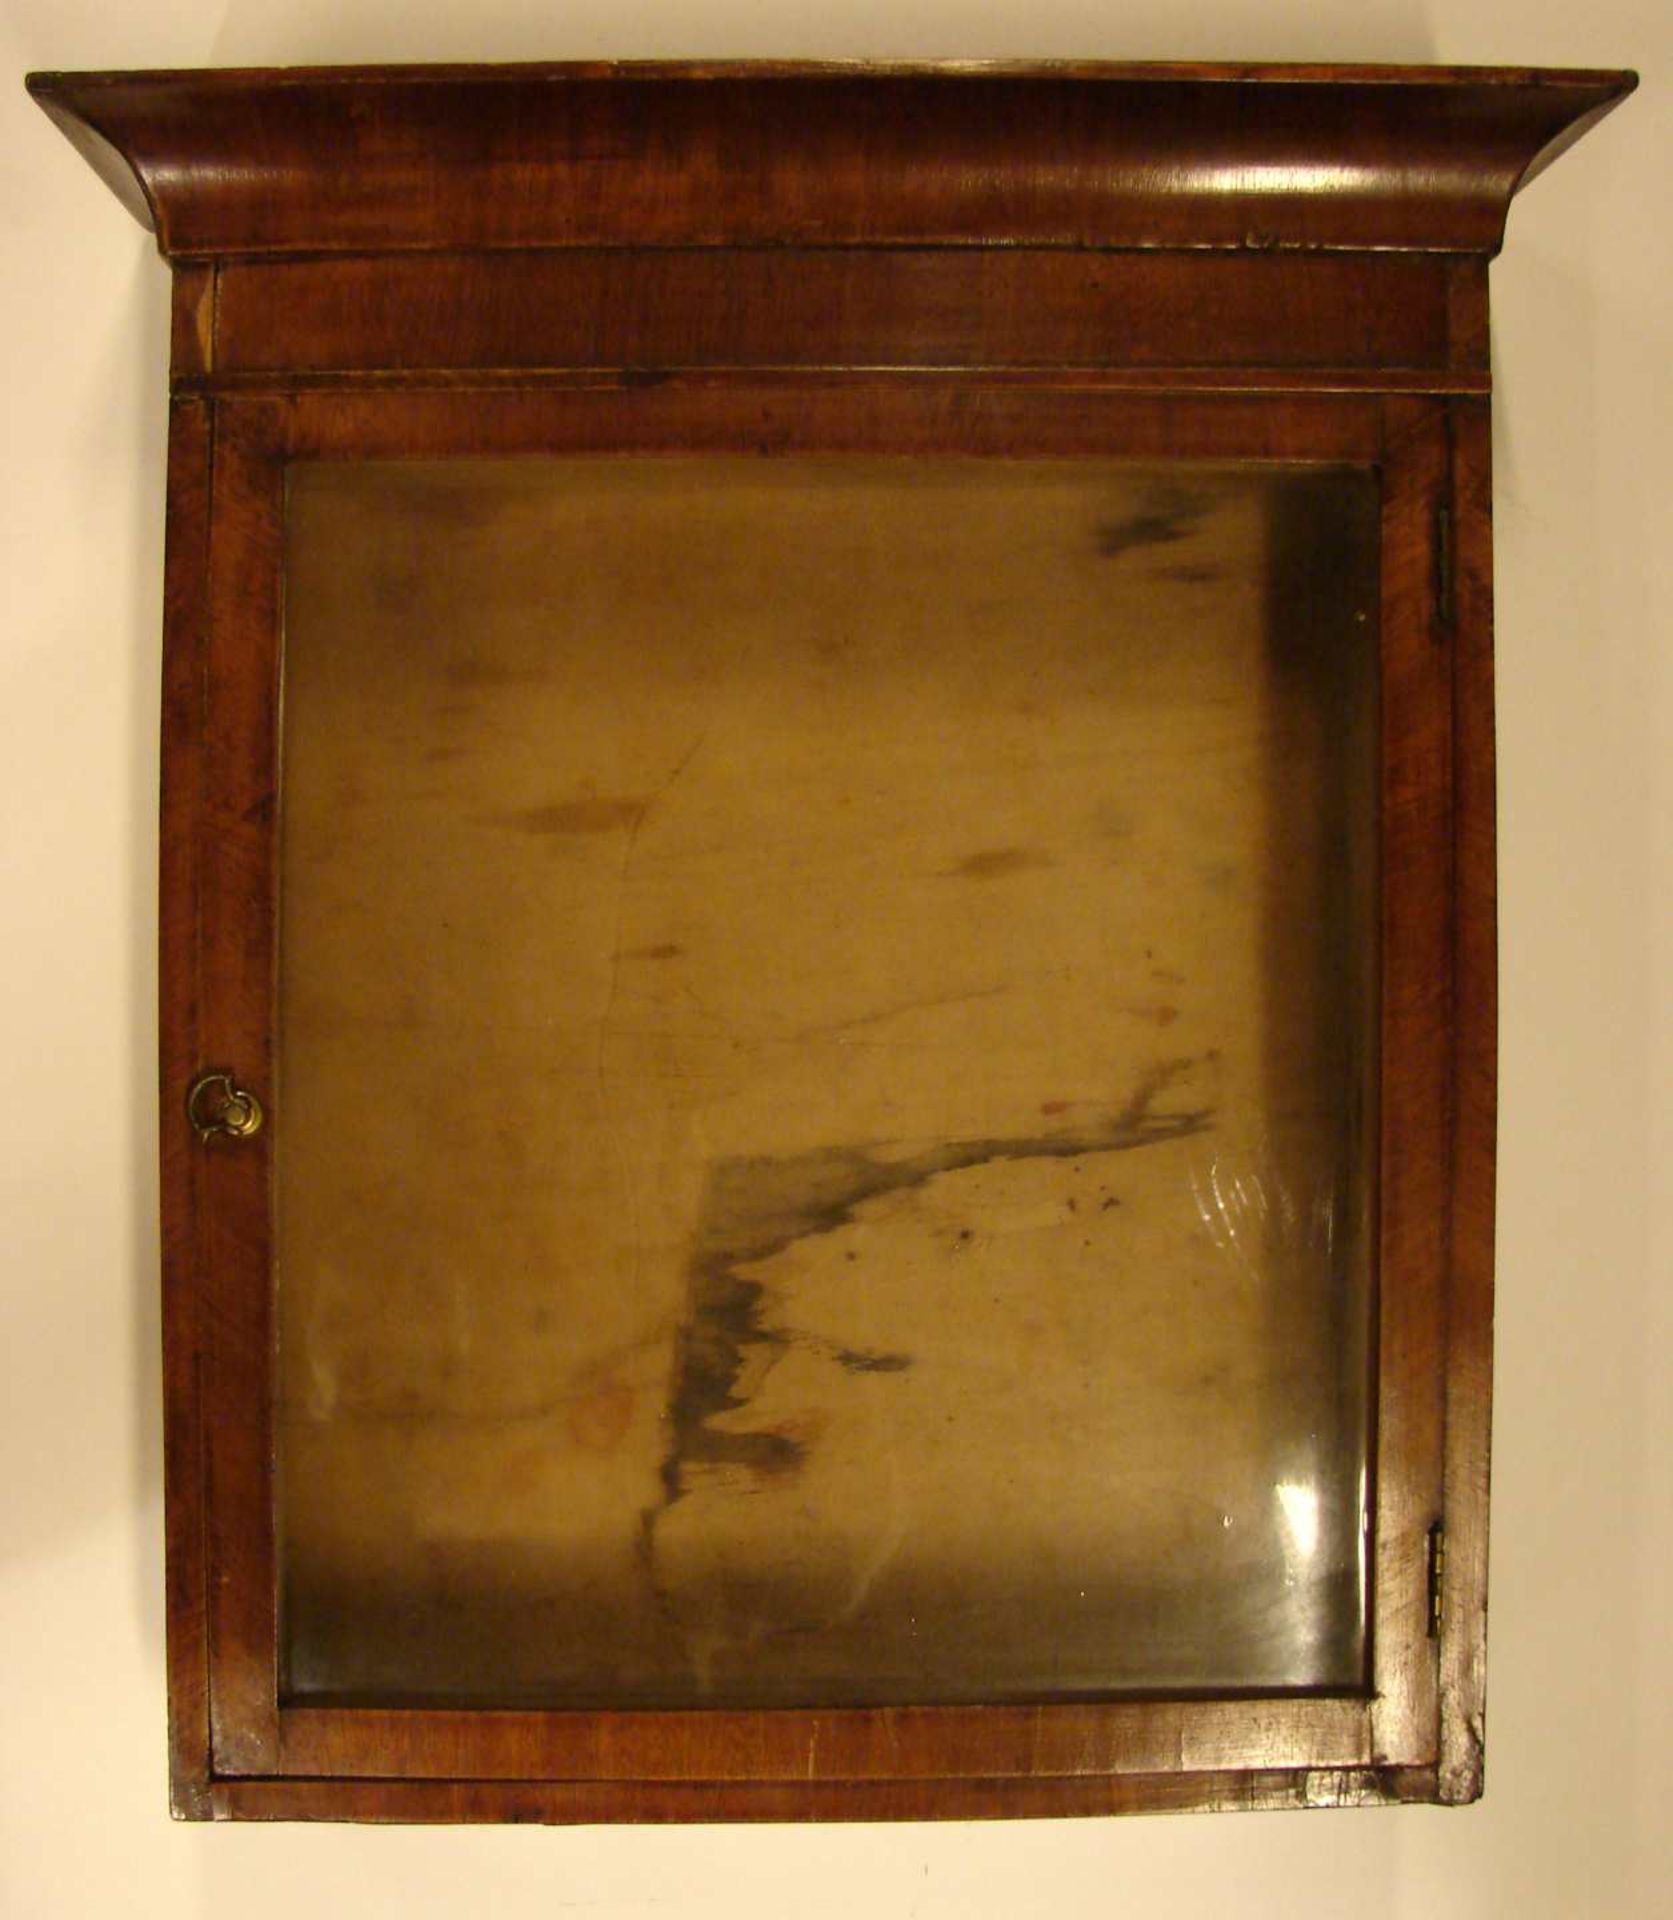 Hängeschrank, Holz, 1 Glastüre, ca. 46 x 51 cm